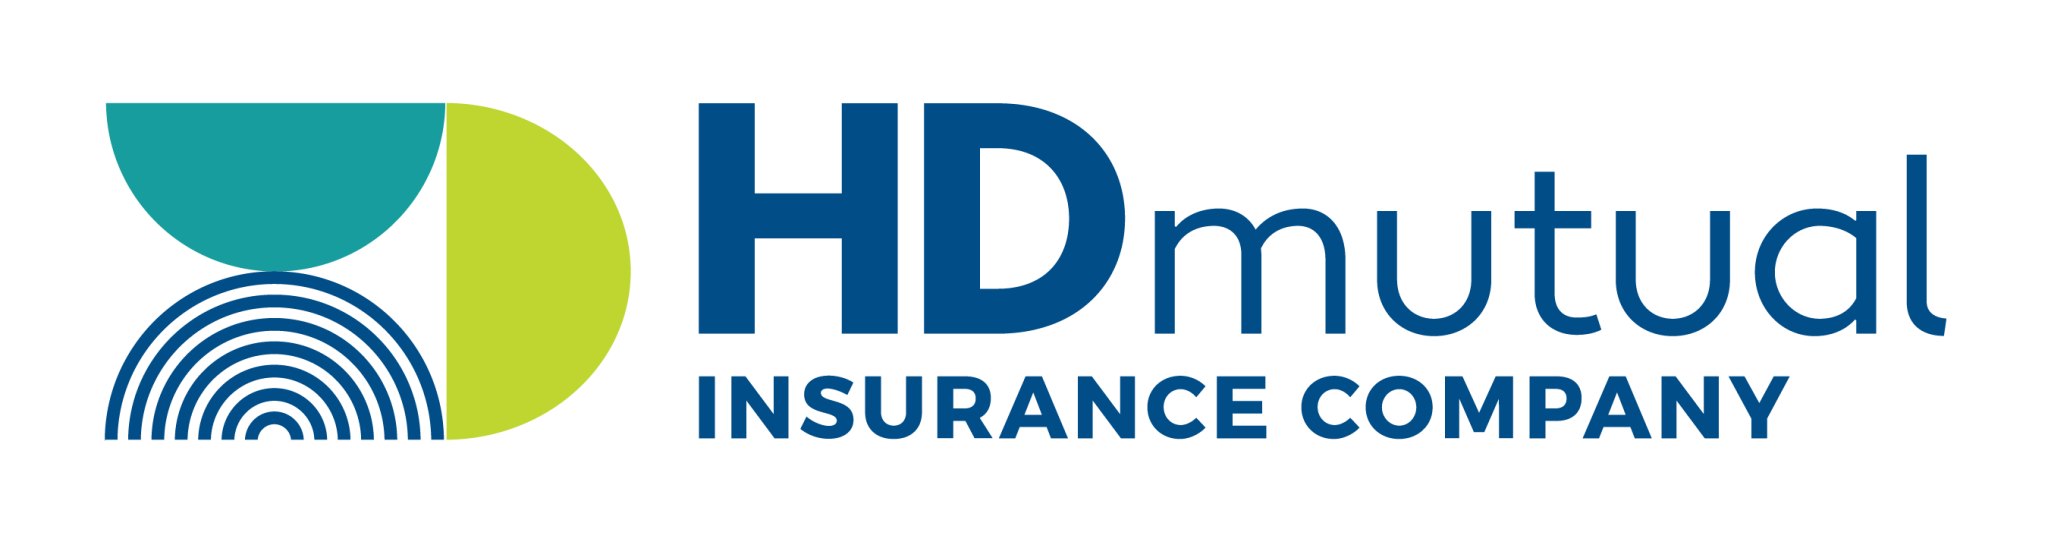 HDMutual_InsuranceCompany